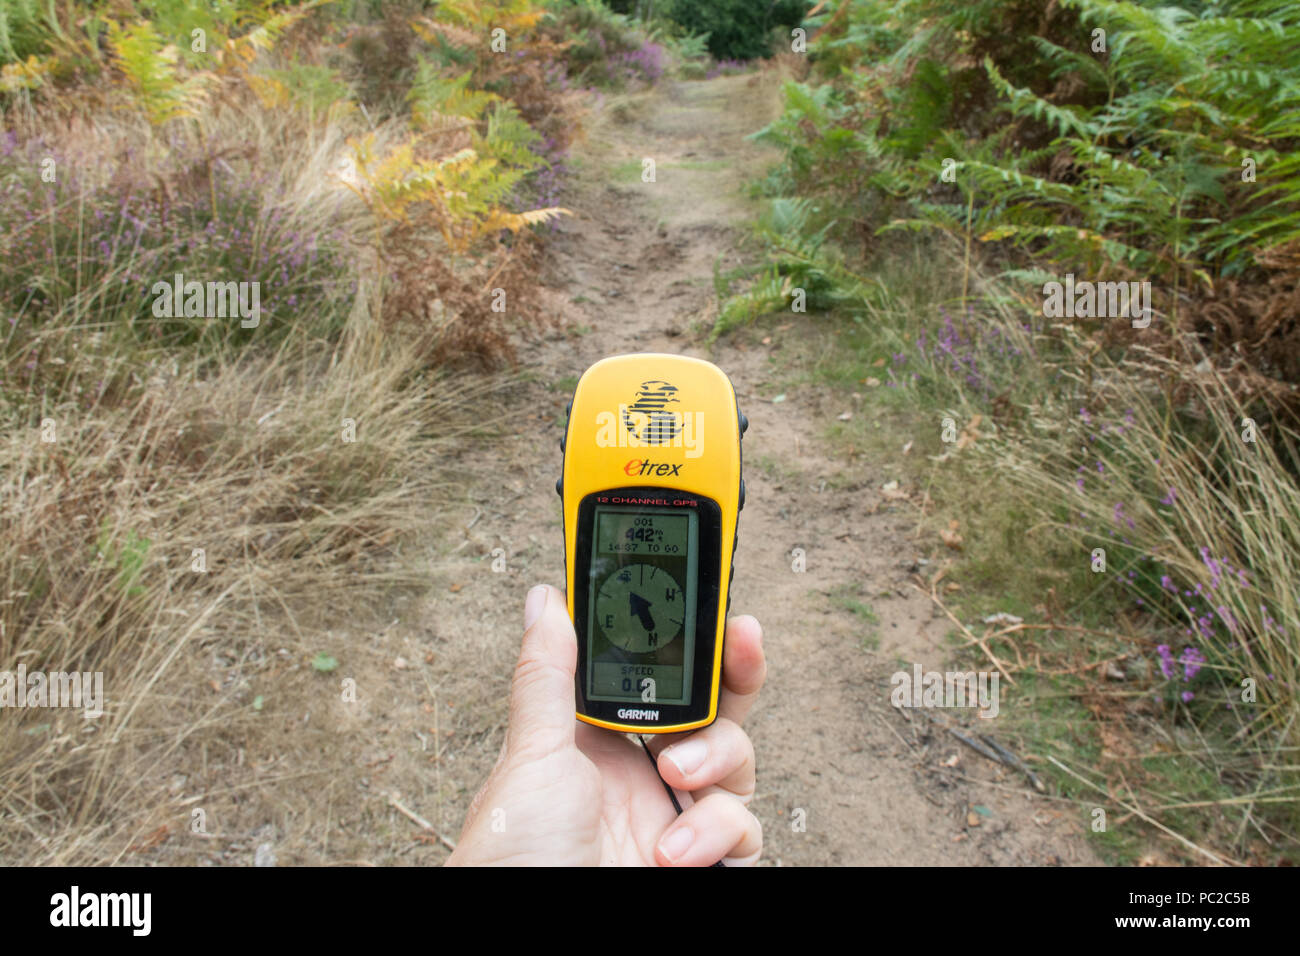 Frau mit einem Handheld Garmin GPS-Gerät den Weg in die Landschaft (Heide) Wanderwege zu finden Stockfoto